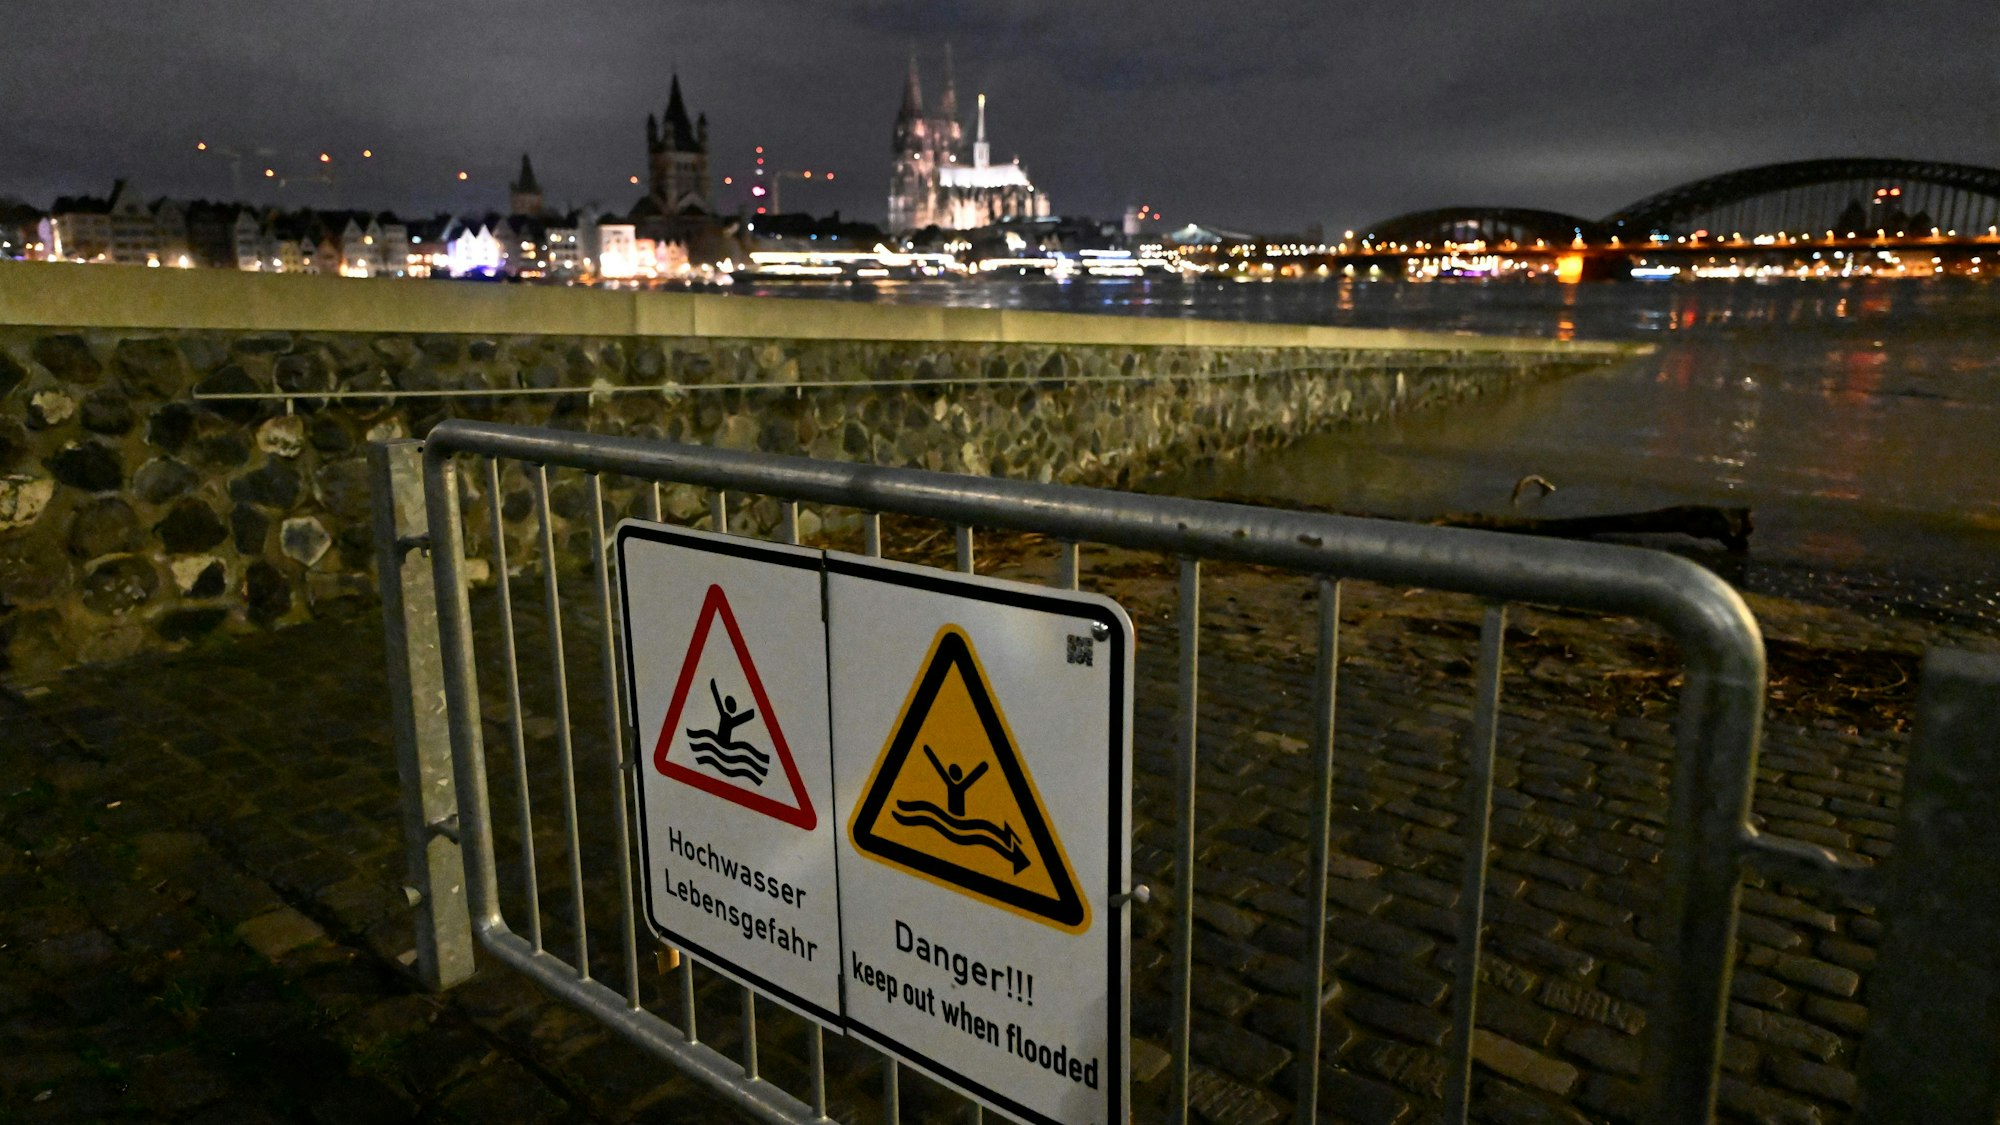 Hochwasser-Warnschilder sind am 27.12. am Rheinufer in Köln an einem Absperrgitter angebracht. Ergiebiger Dauerregen hatte den Pegelstand des Rheins ansteigen lassen, inzwischen ist er wieder deutlich gesunken. Doch es droht wieder Dauerregen.